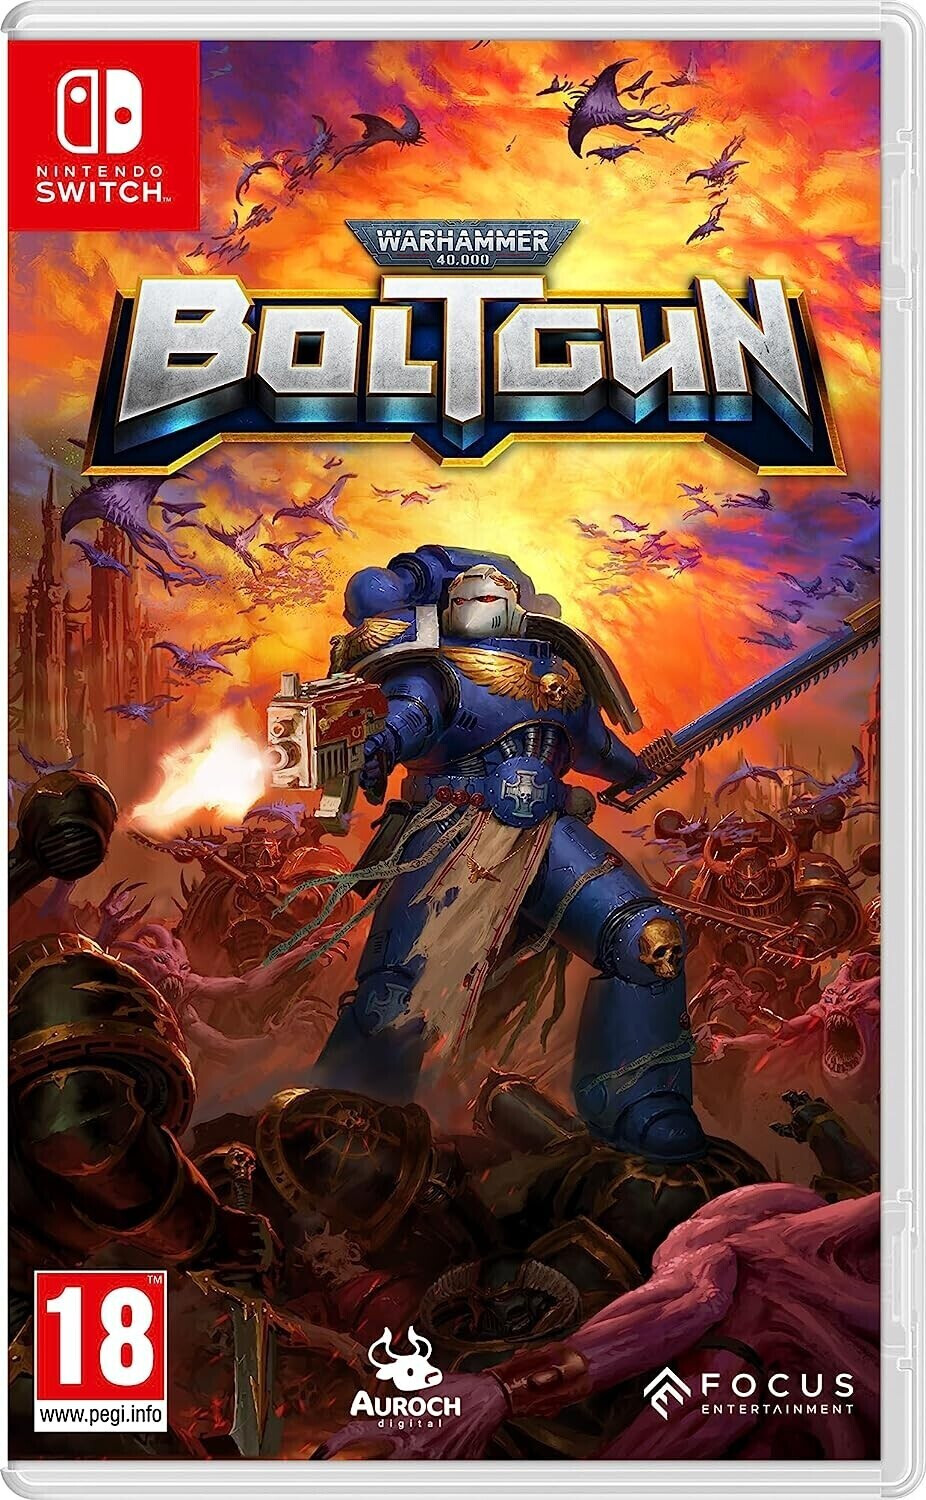 Photos - Game Focus Home Interactive Warhammer 40.000: Boltgun (Switch)